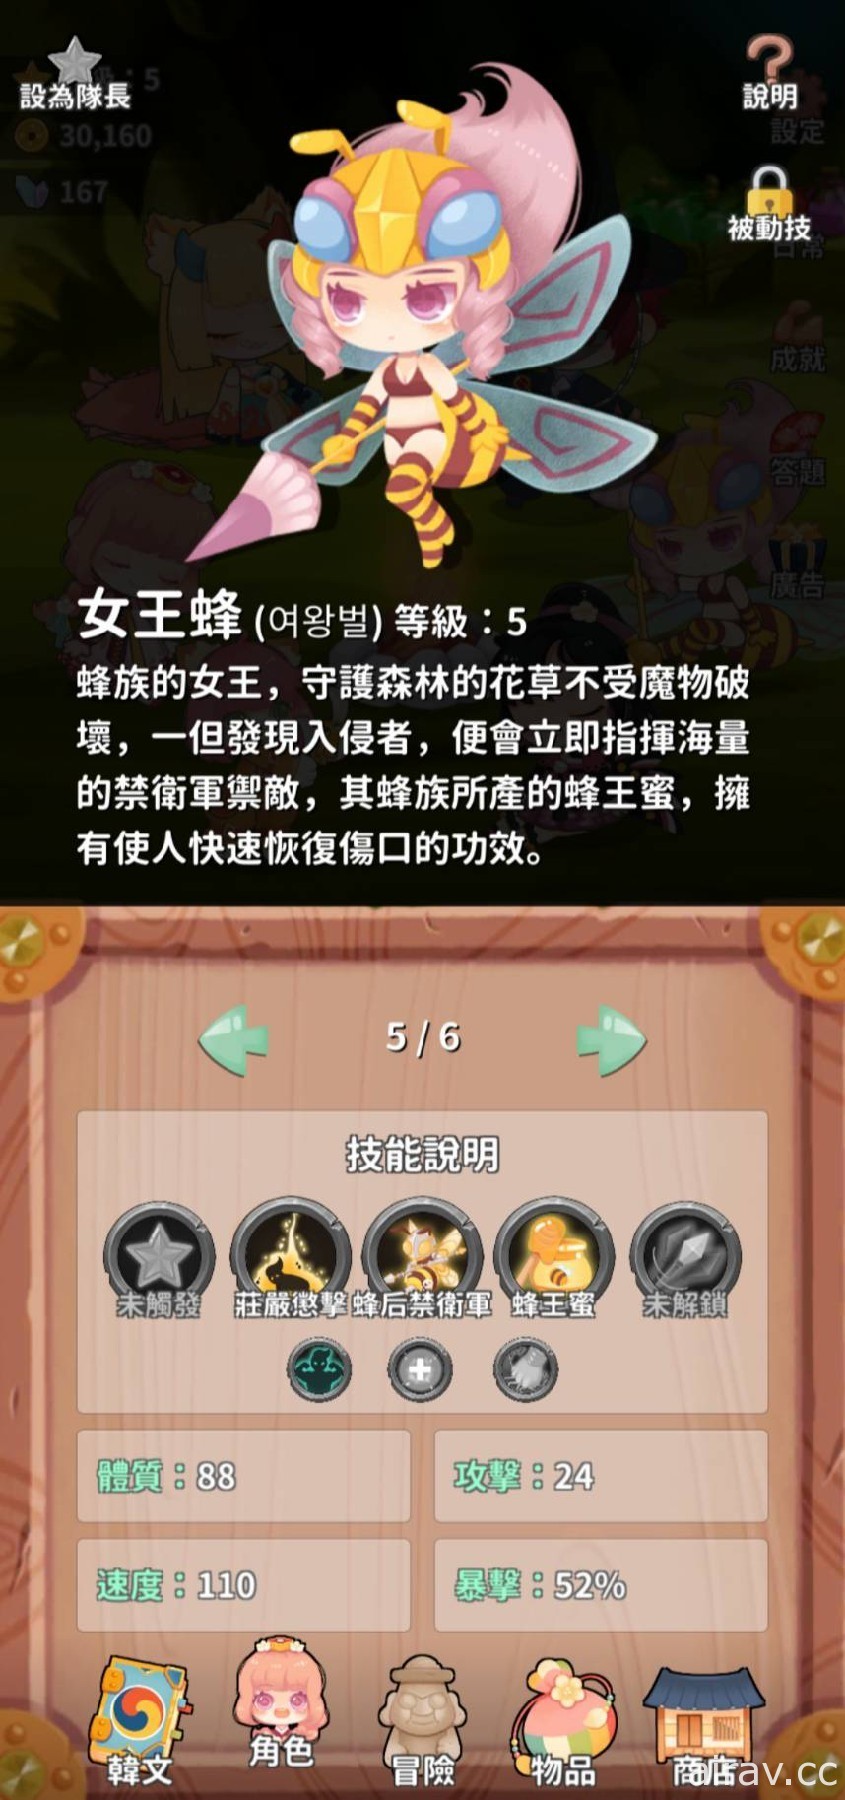 台湾独立开发者新作《韩语 40 音：泡菜国冒险》专为韩语初学者打造的寓教于乐游戏